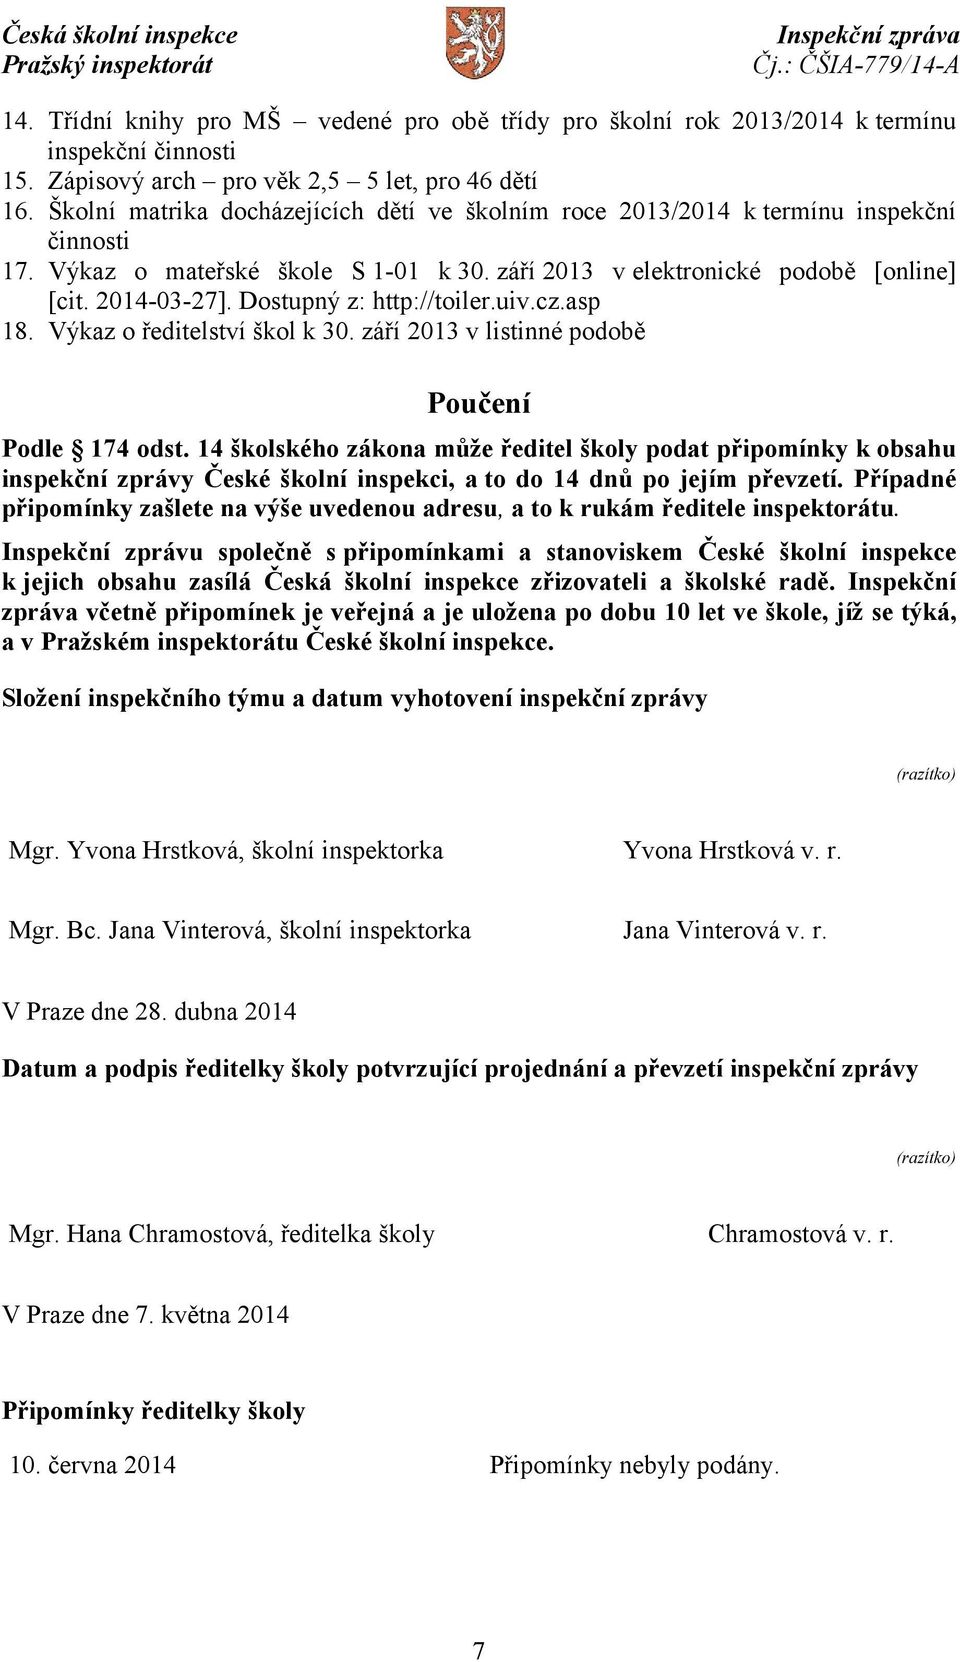 Dostupný z: http://toiler.uiv.cz.asp 18. Výkaz o ředitelství škol k 30. září 2013 v listinné podobě Poučení Podle 174 odst.